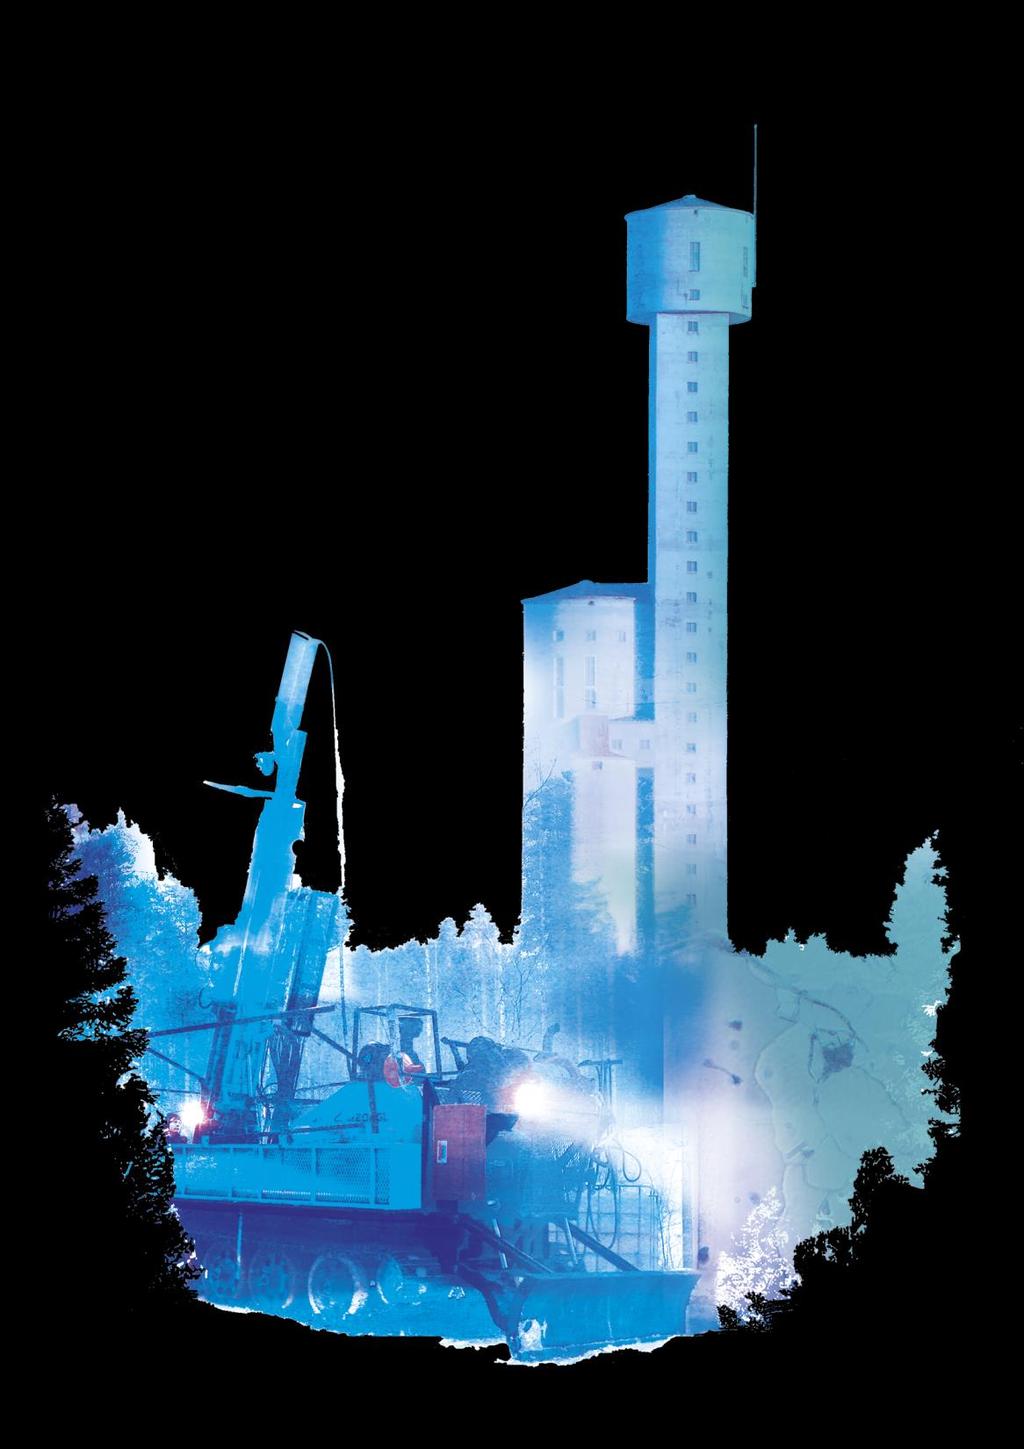 Hautalammen Koboltti-Nikkeli-Kuparikaivos- projekti Outokummun kaivosalue uudelleen tuotantoon Tavoitteena